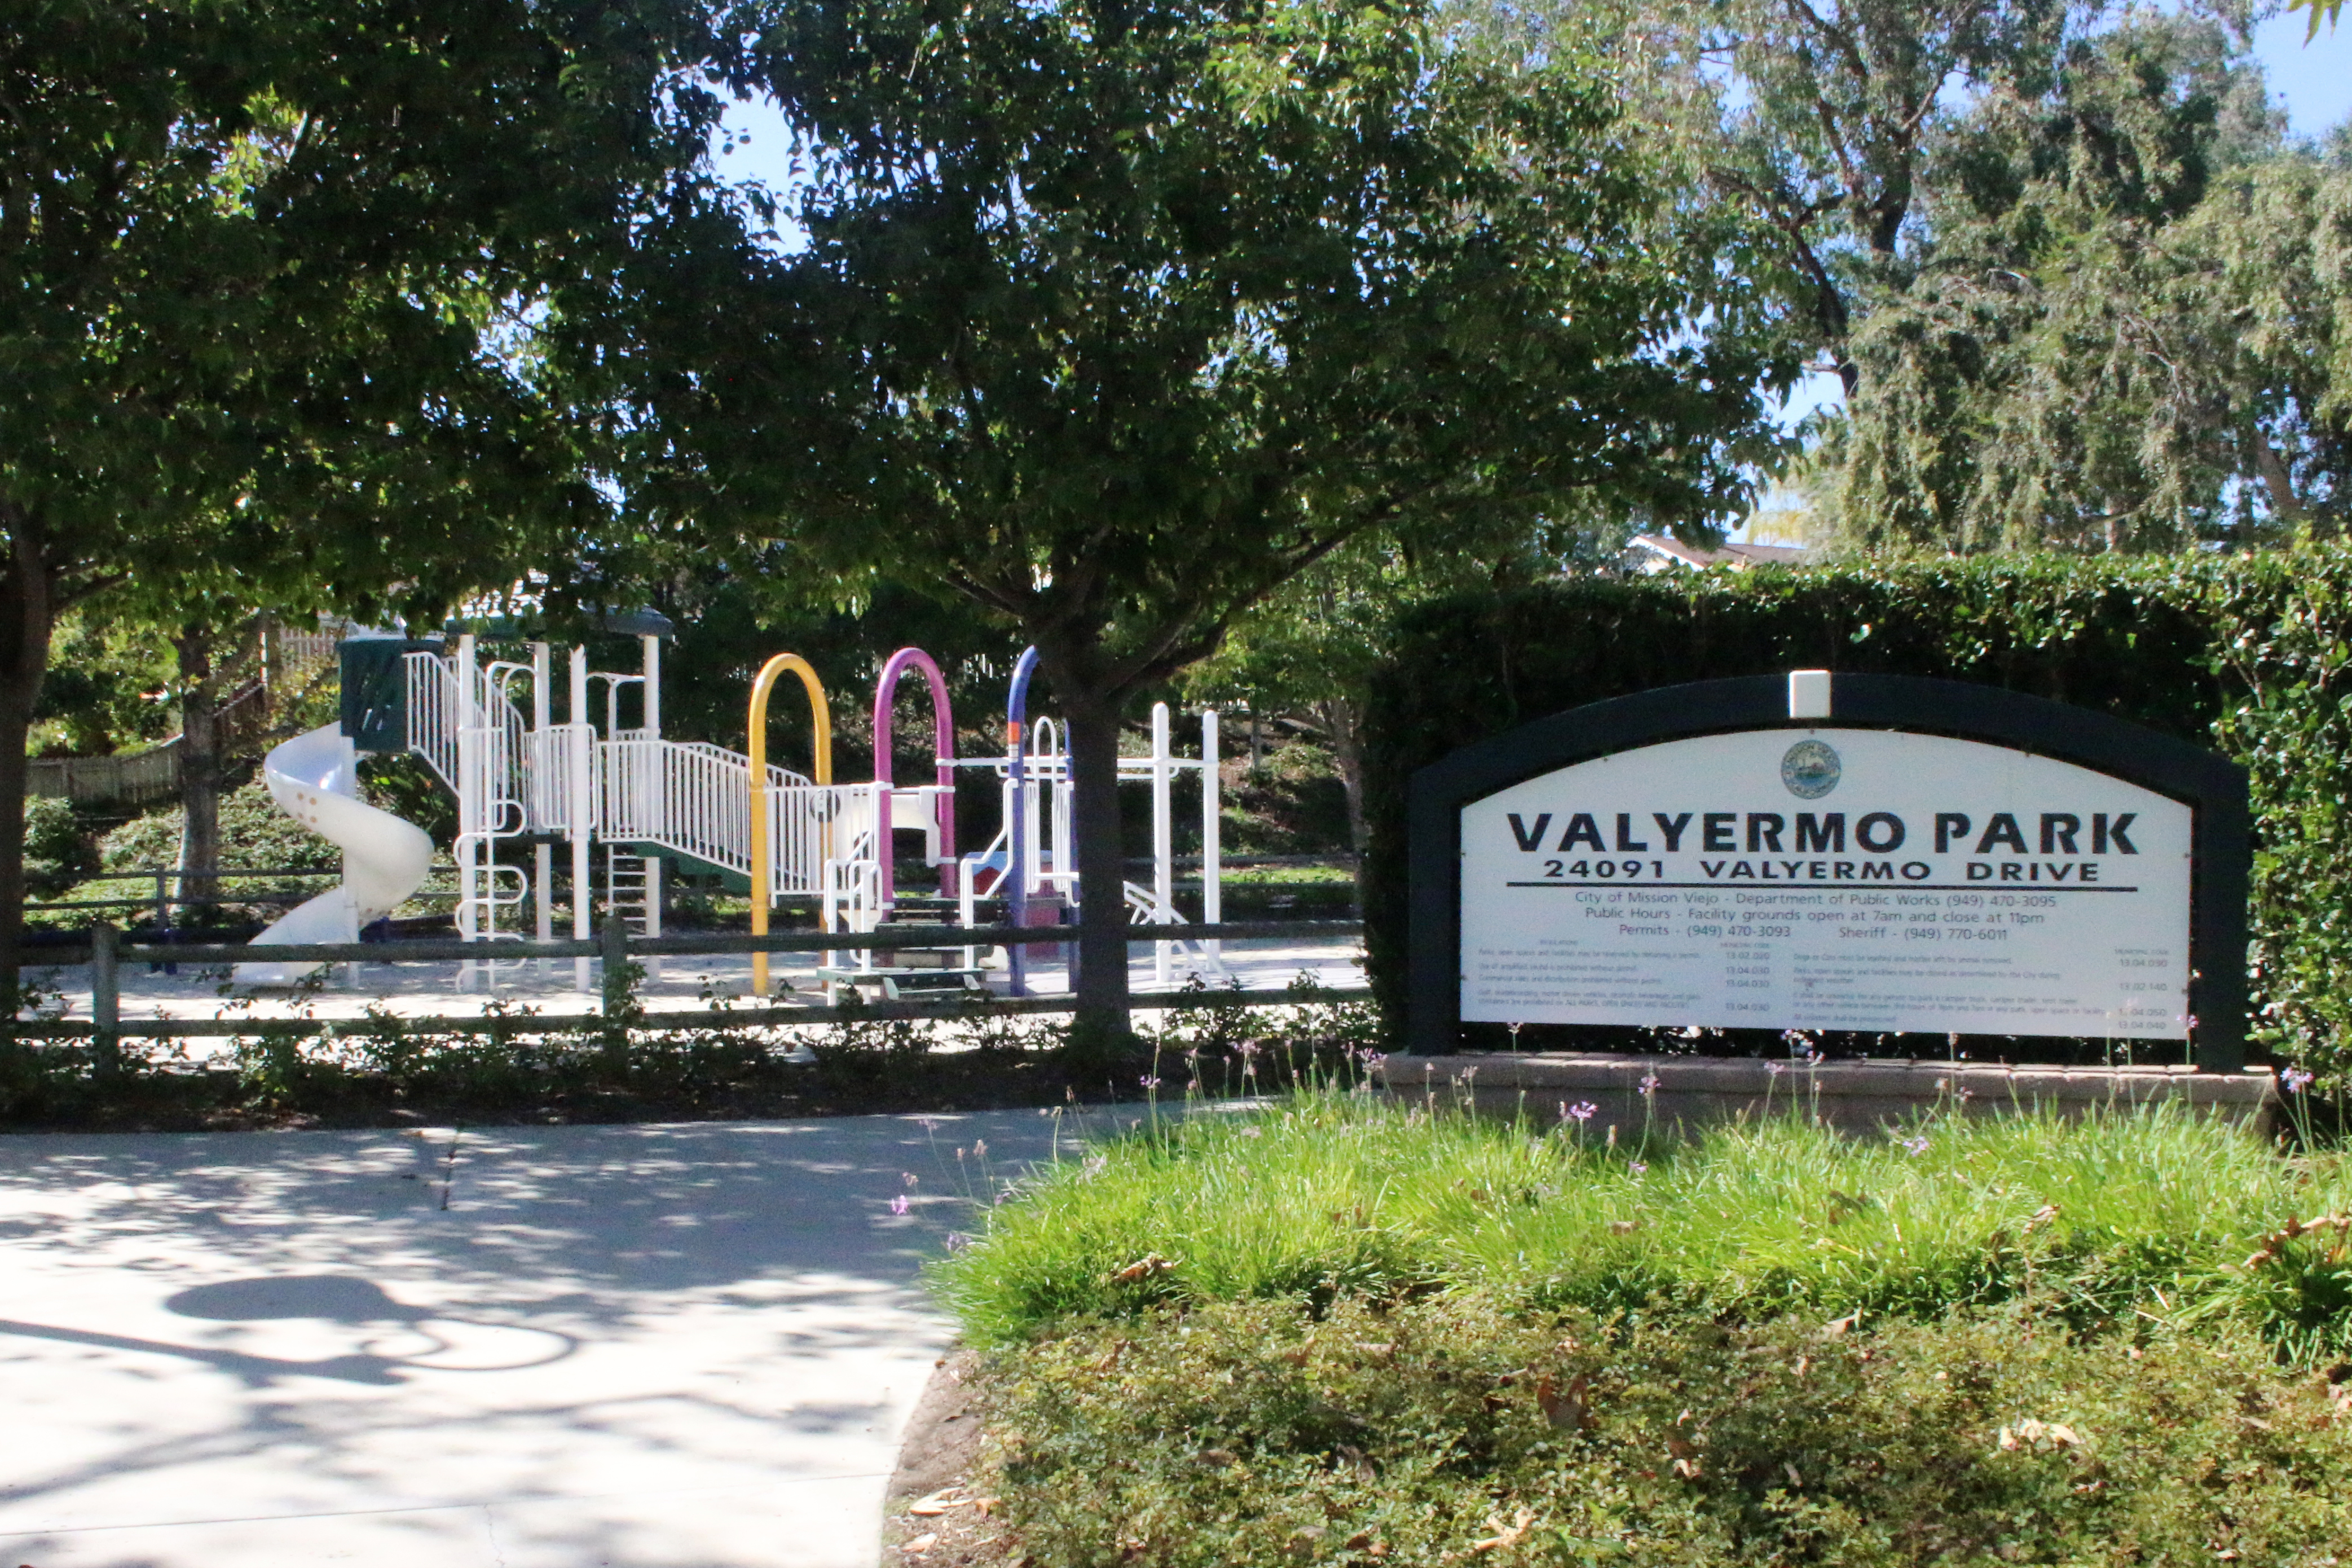 Valyermo Park and playground